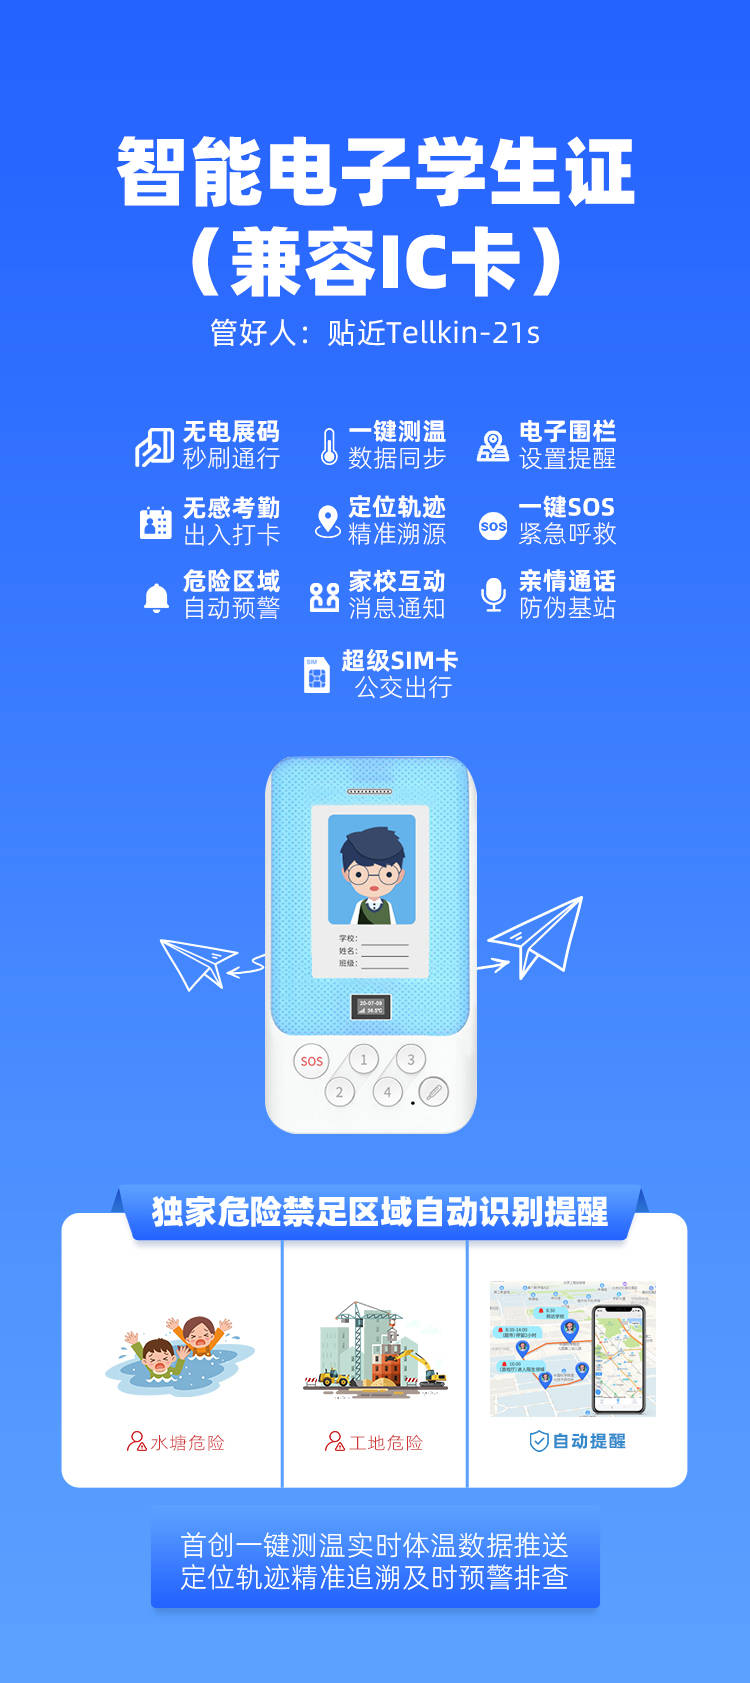 此外,上学啦科技研发的电子学生证还打通了中国移动超级sim卡,支持200